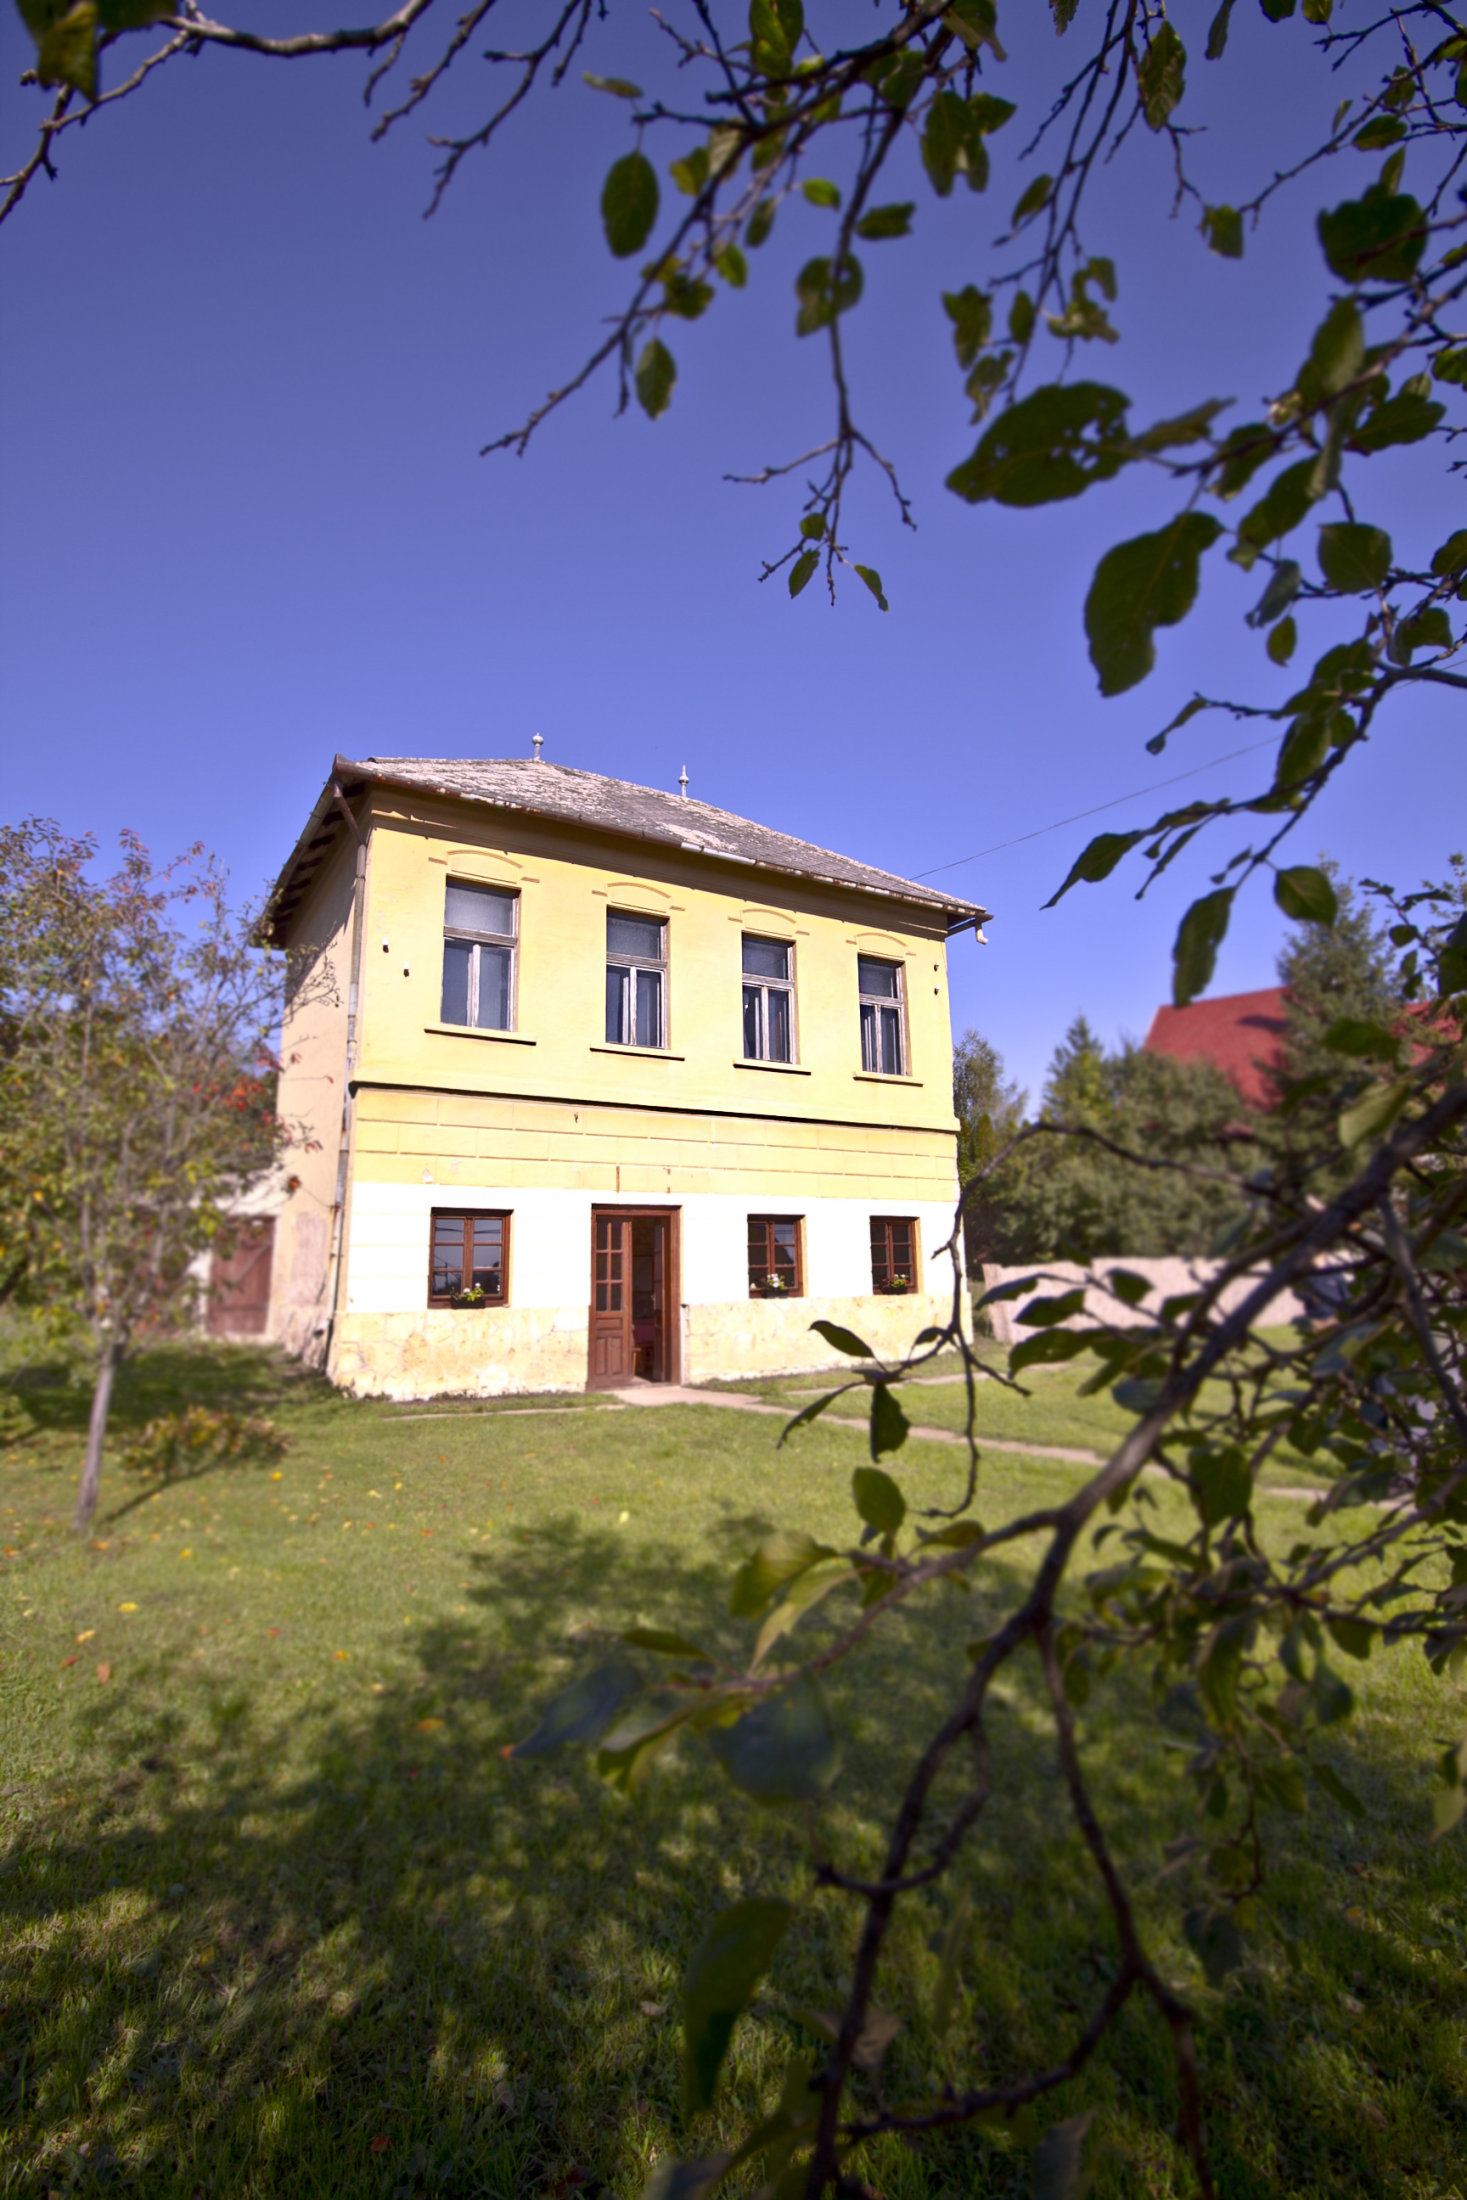 A valaha vörös lámpás házként működő épület ma már az Árpád-hegy Pince központi helye